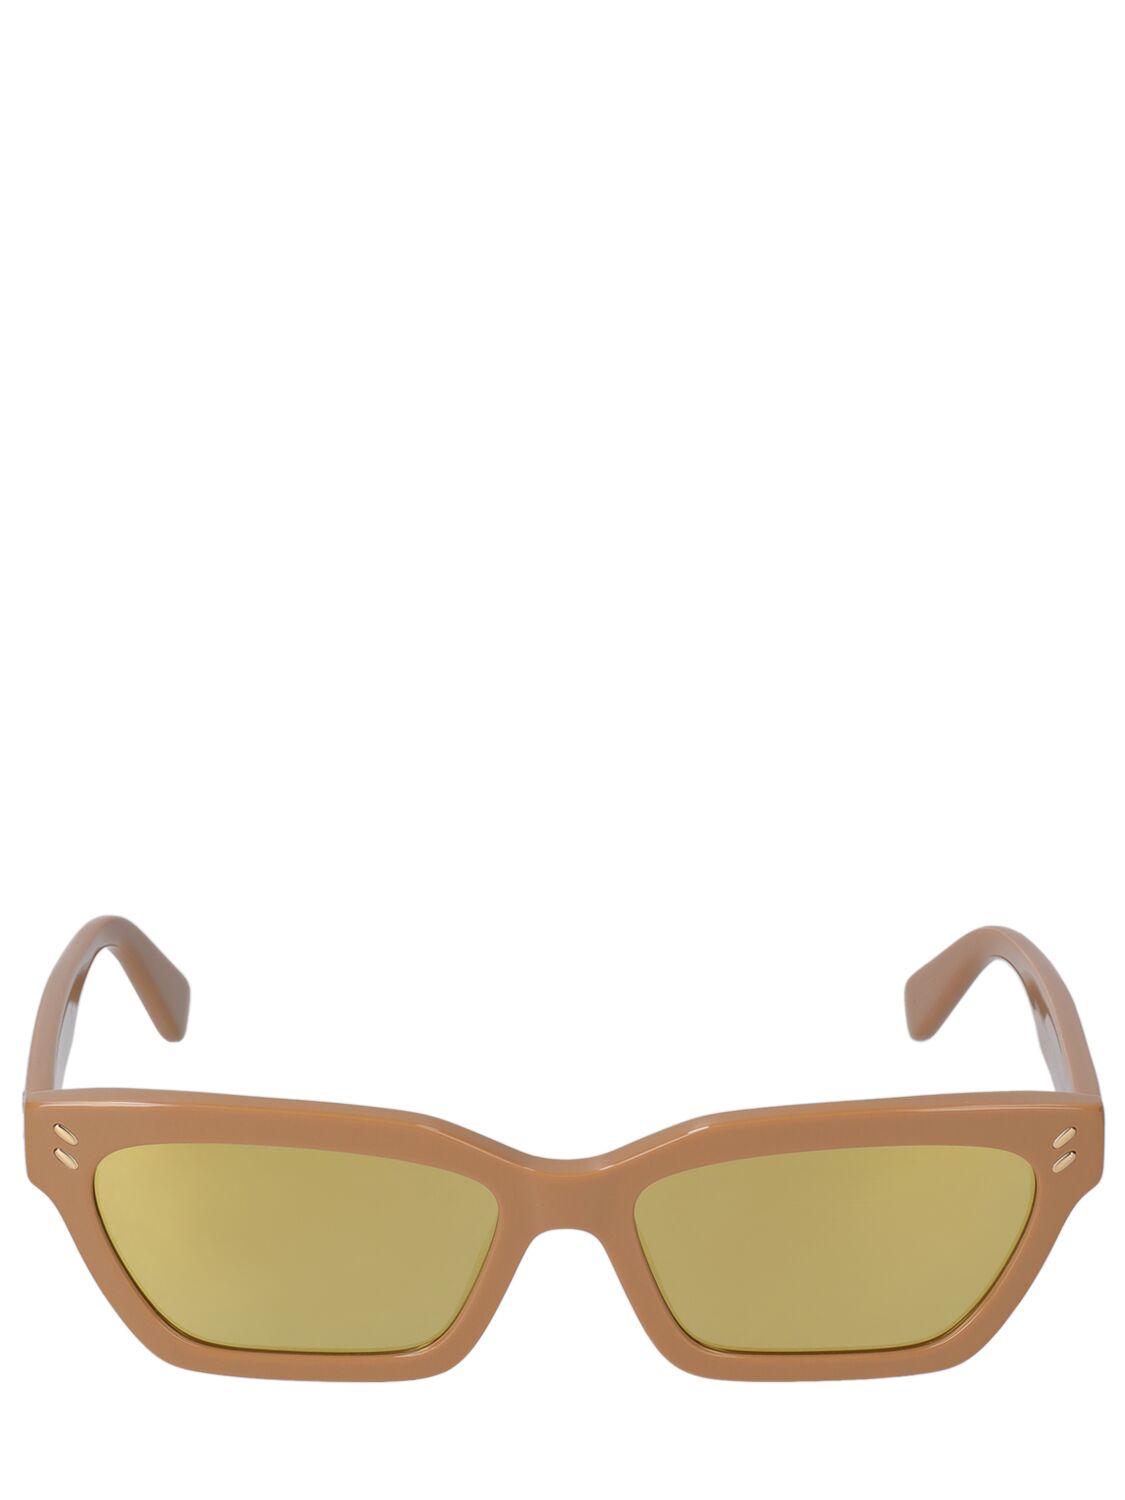 Image of Squared Acetate Sunglasses